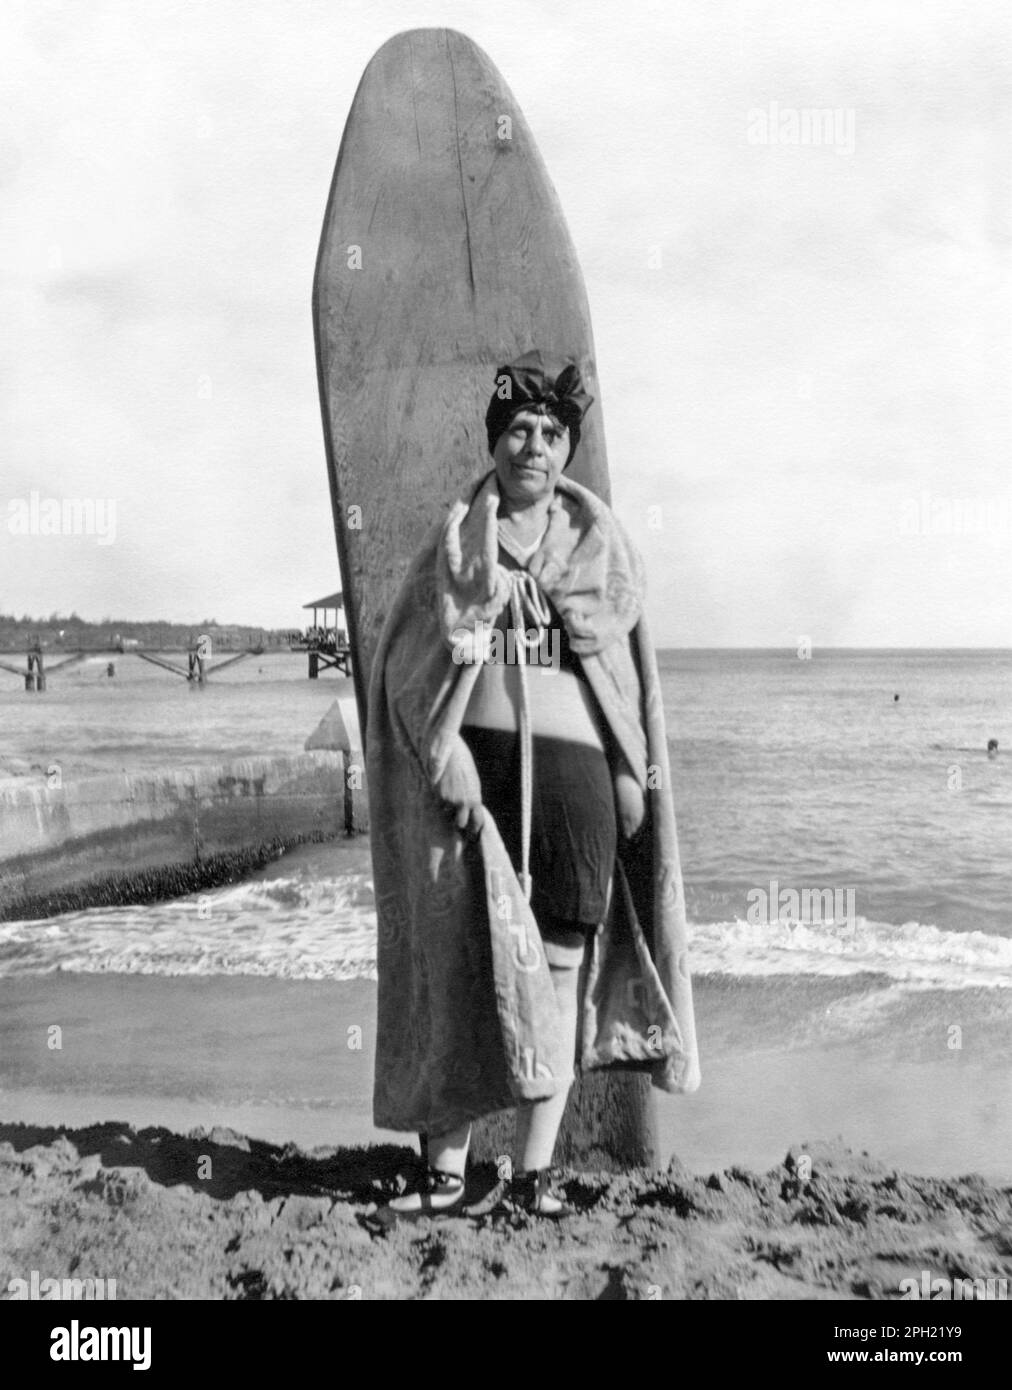 Ritratto vintage di una donna anziana che si posa con una tavola da surf in legno a Waikiki Beach a Honolulu, Hawaii, negli anni '1920s. Foto Stock